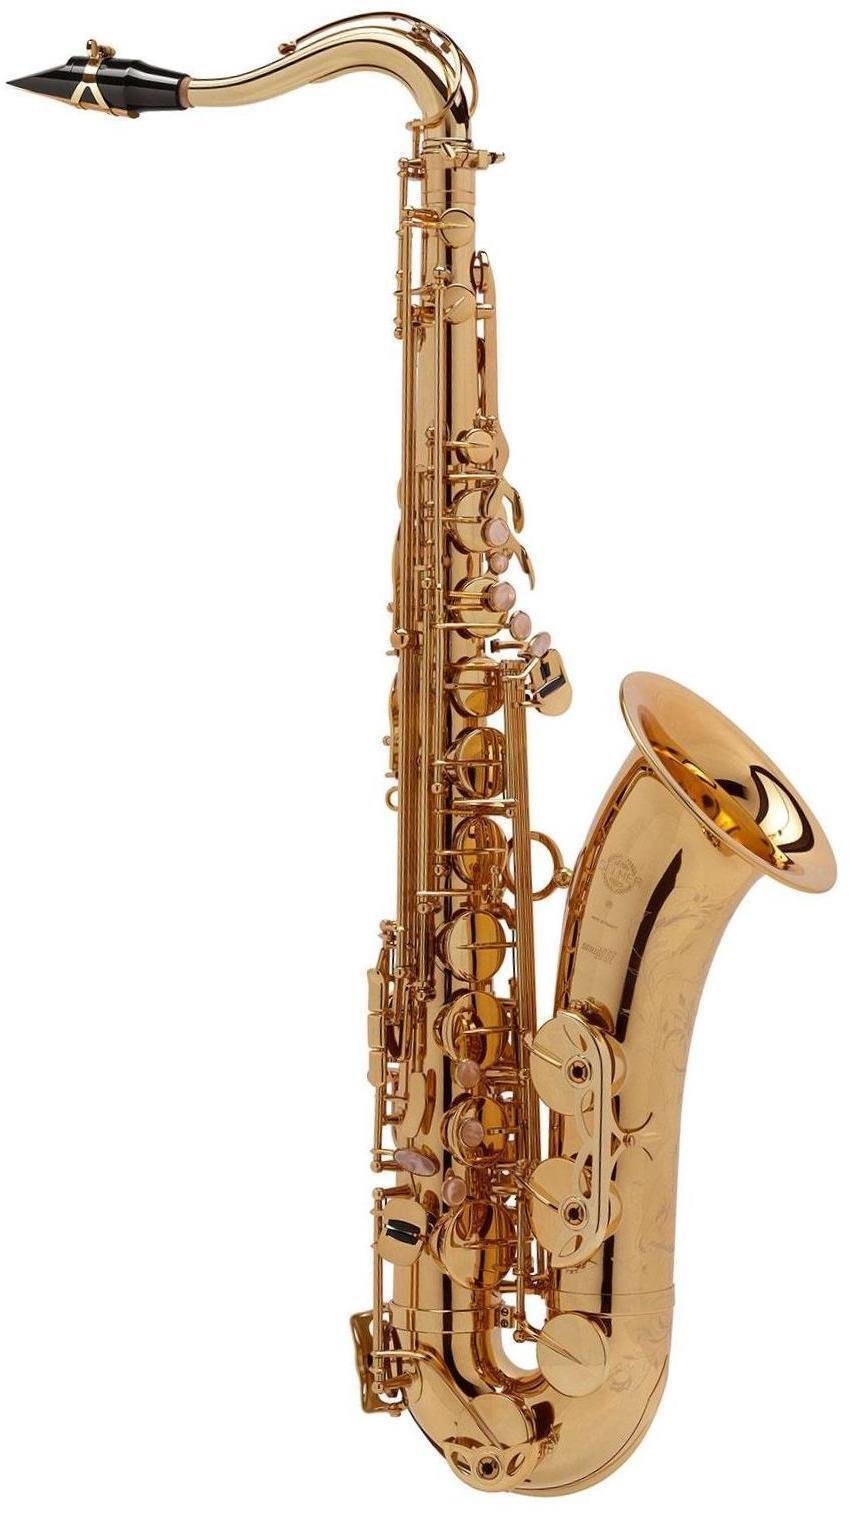 Saxofone tenor Selmer Reference Model 54 tenor sax GG